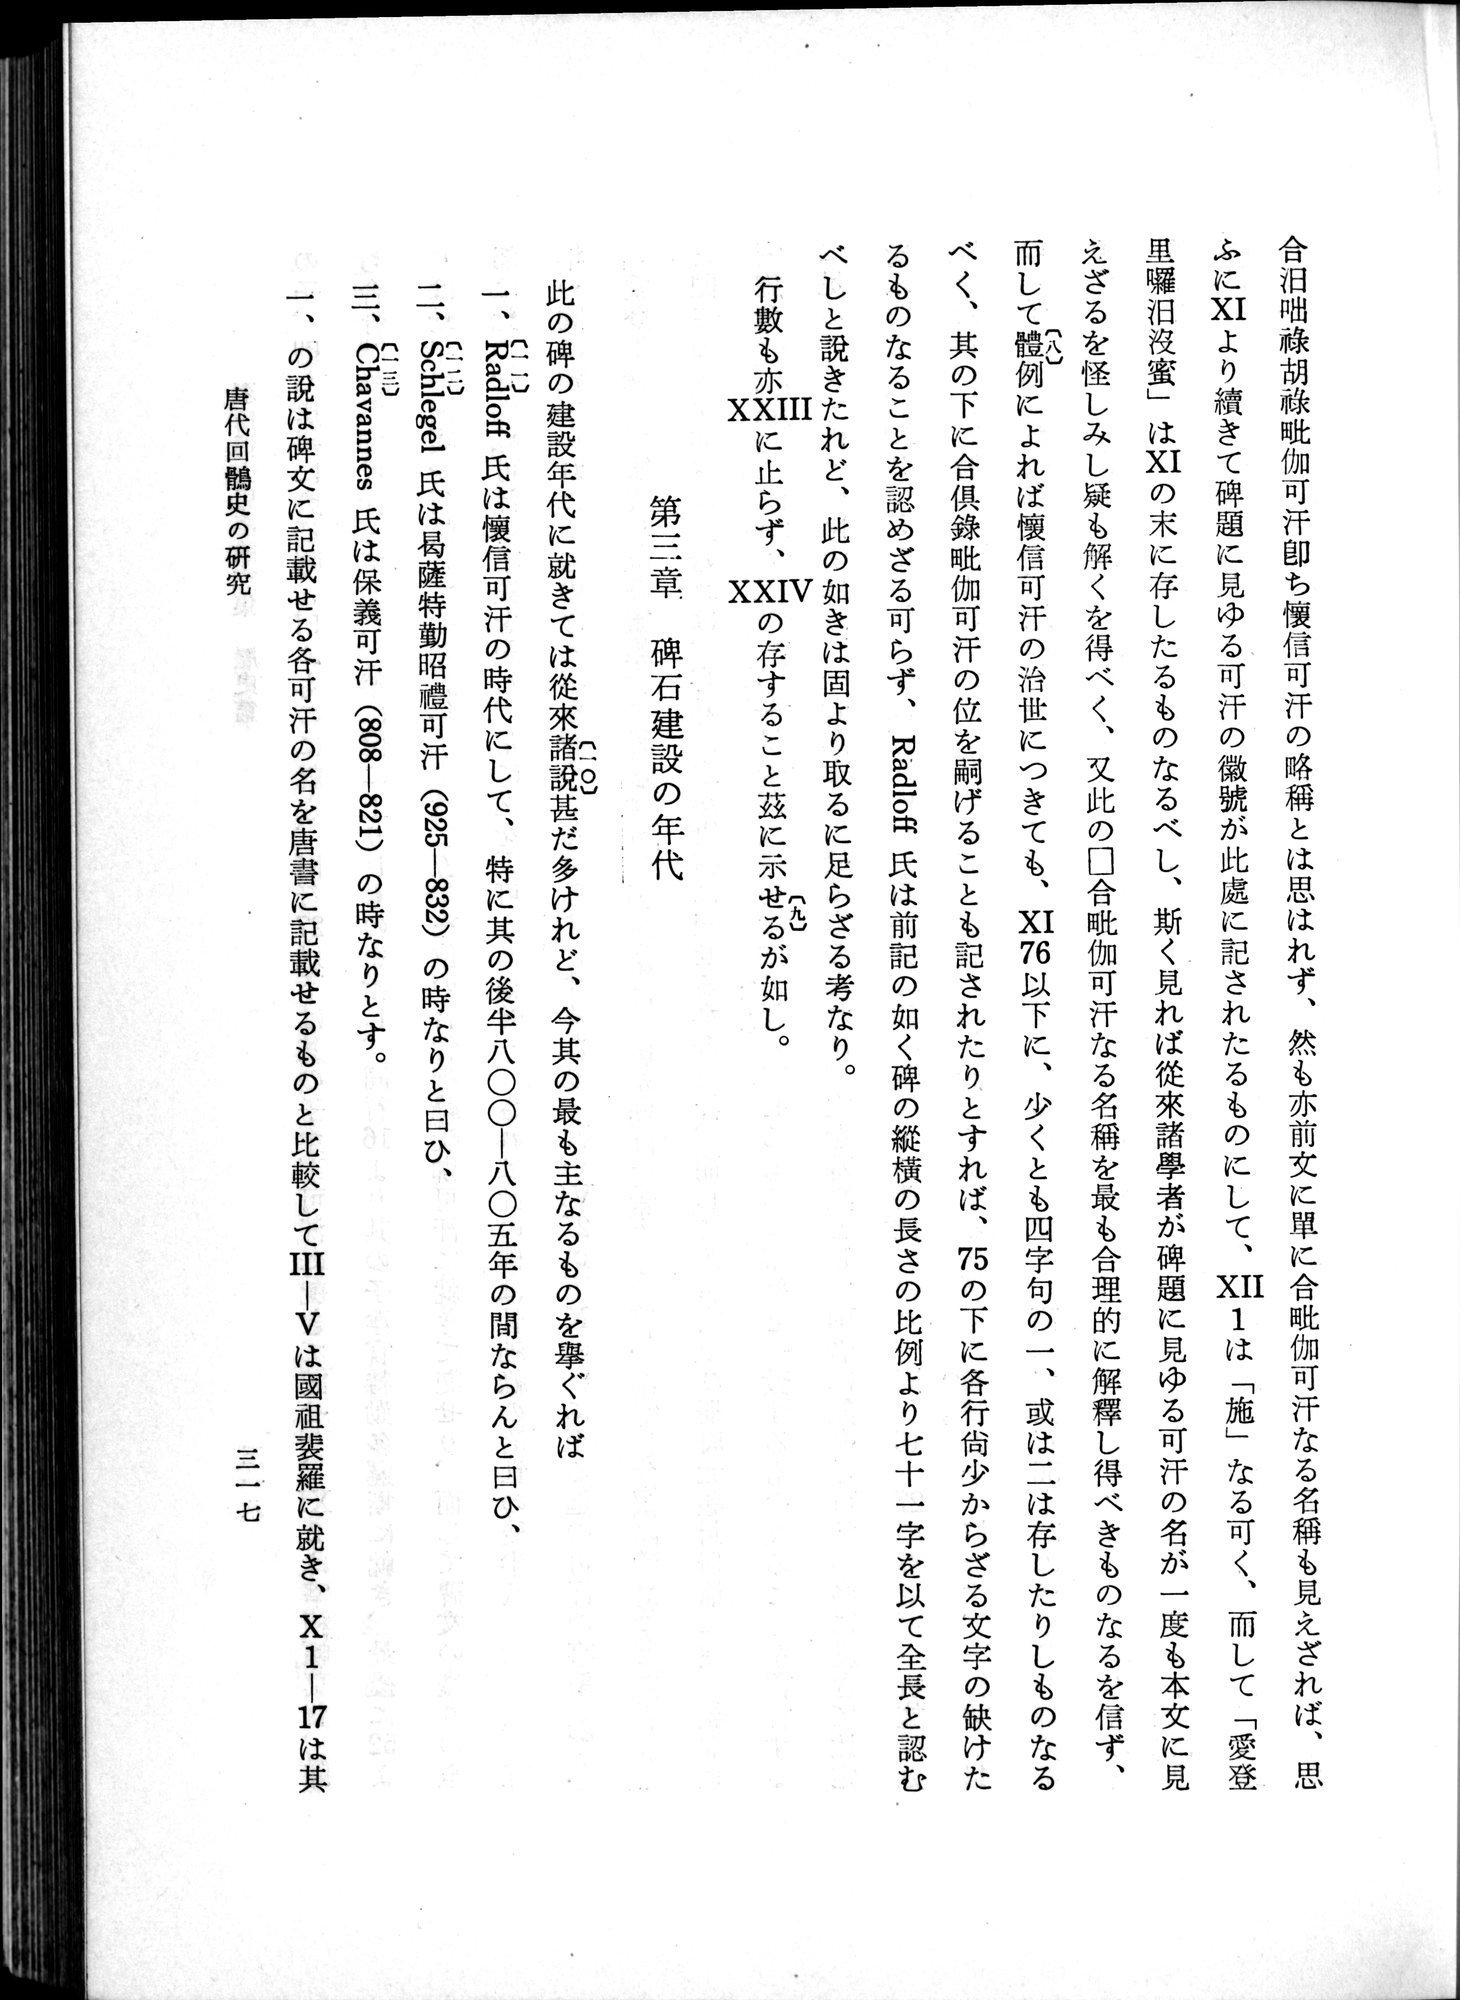 羽田博士史学論文集 : vol.1 / Page 355 (Grayscale High Resolution Image)